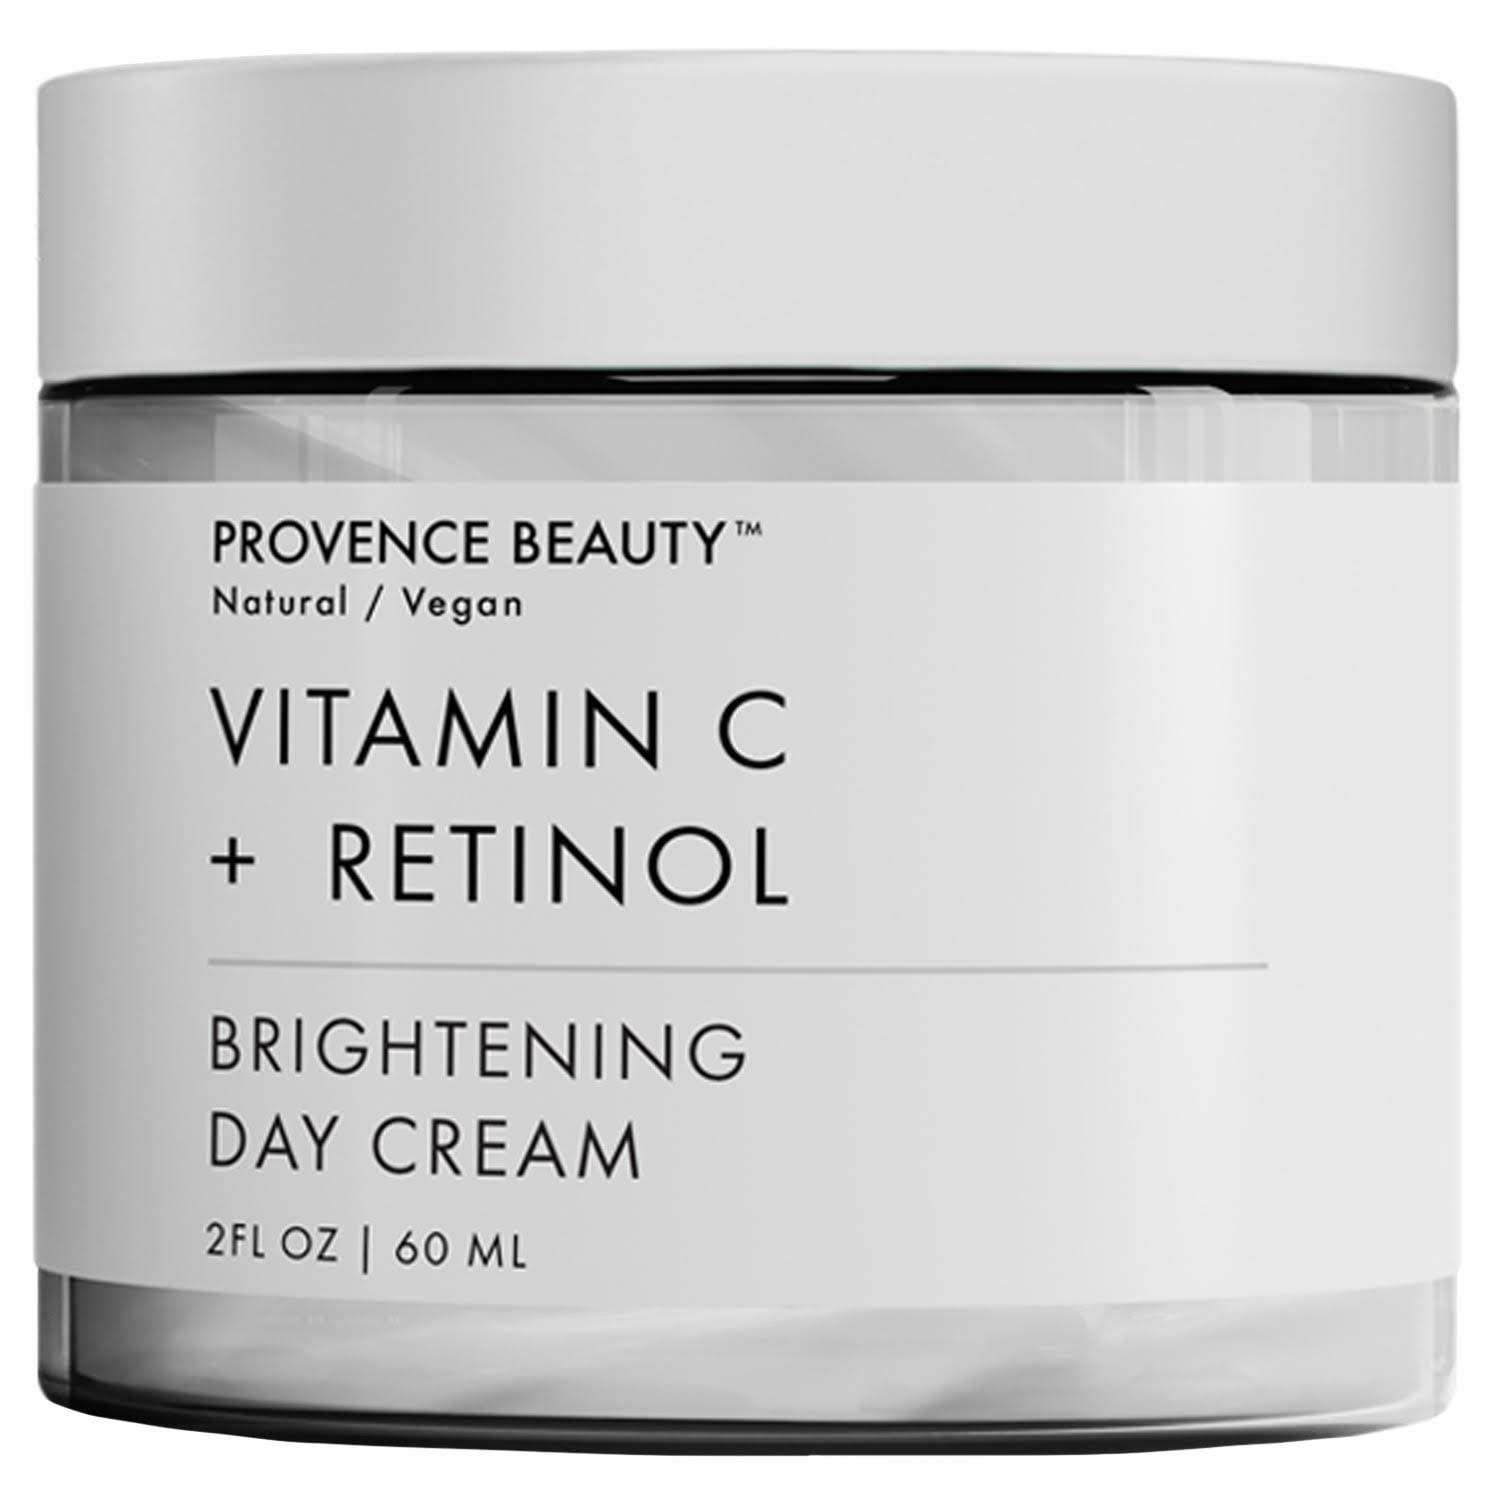 Retinol cream anti aging